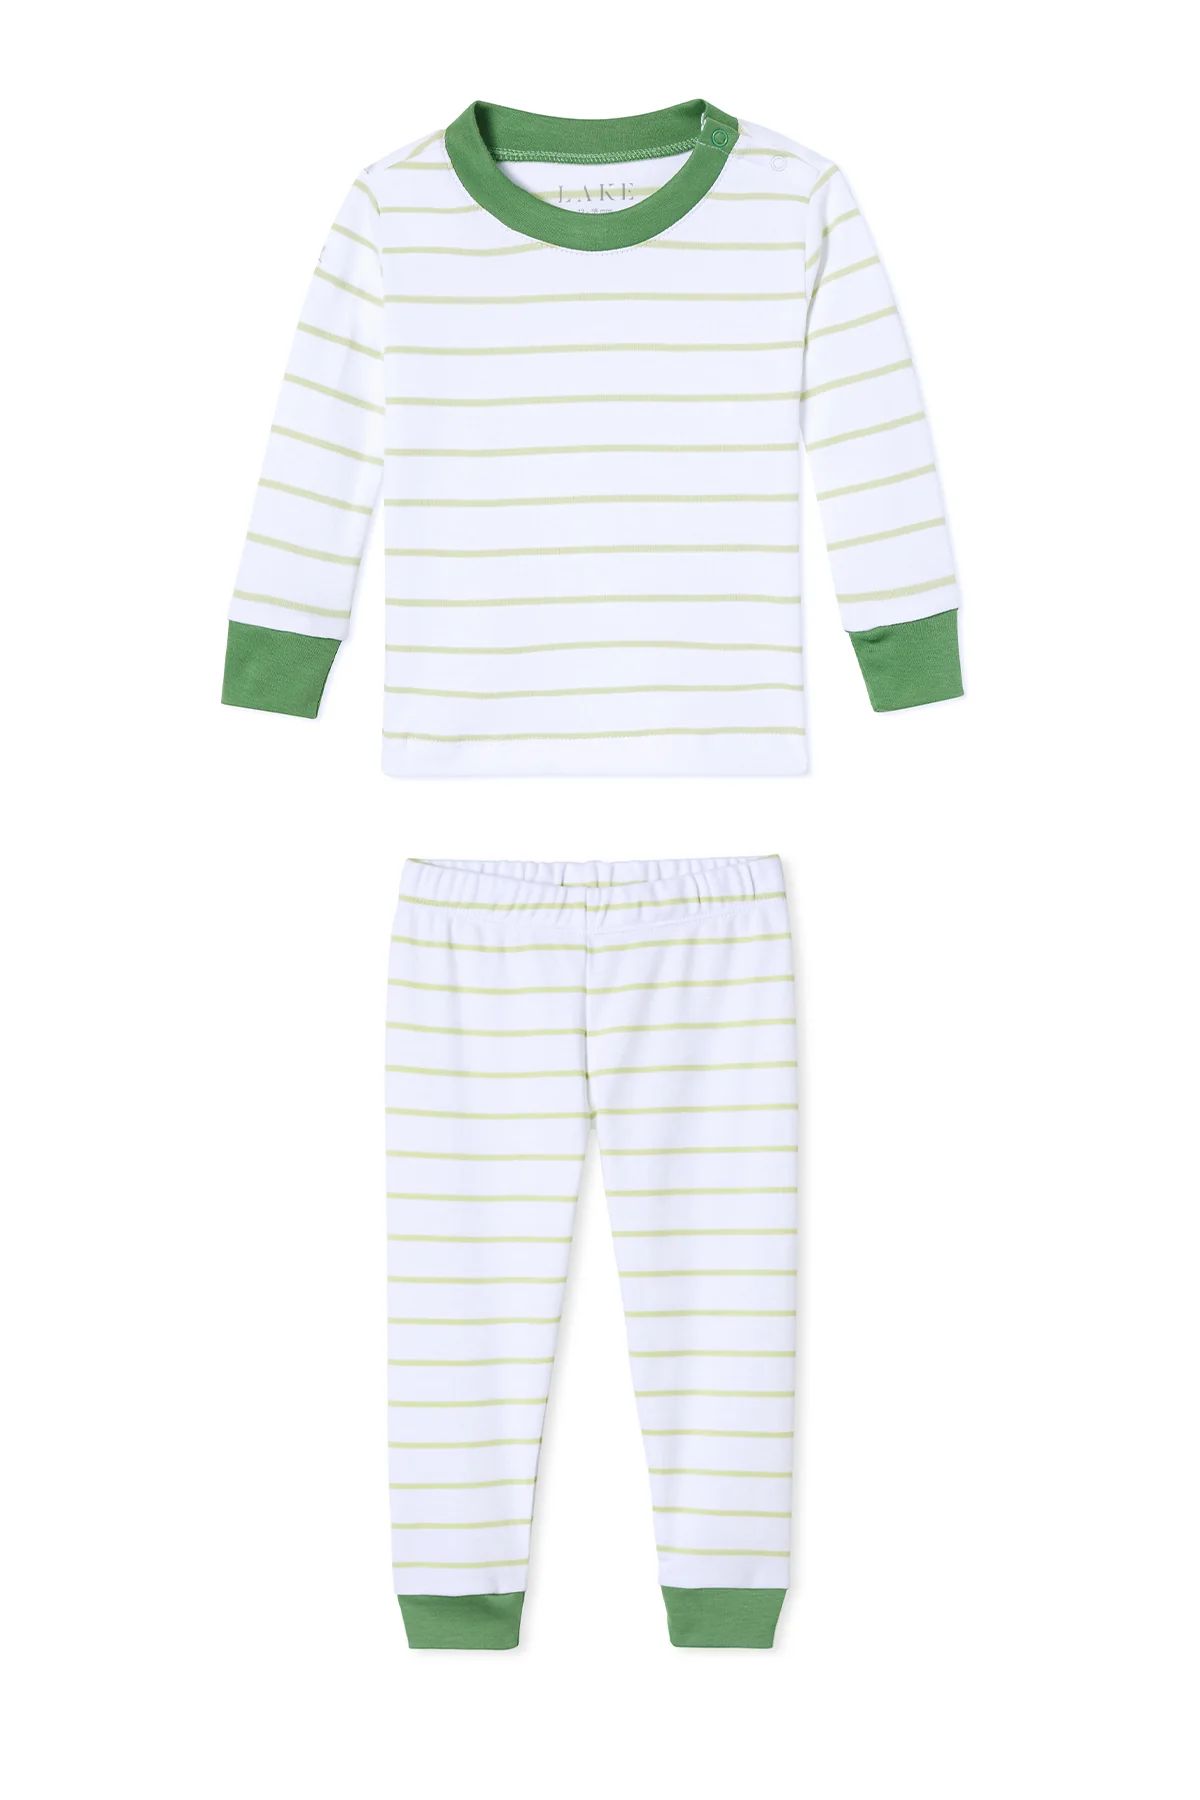 Baby Long-Long Set in Vine | LAKE Pajamas